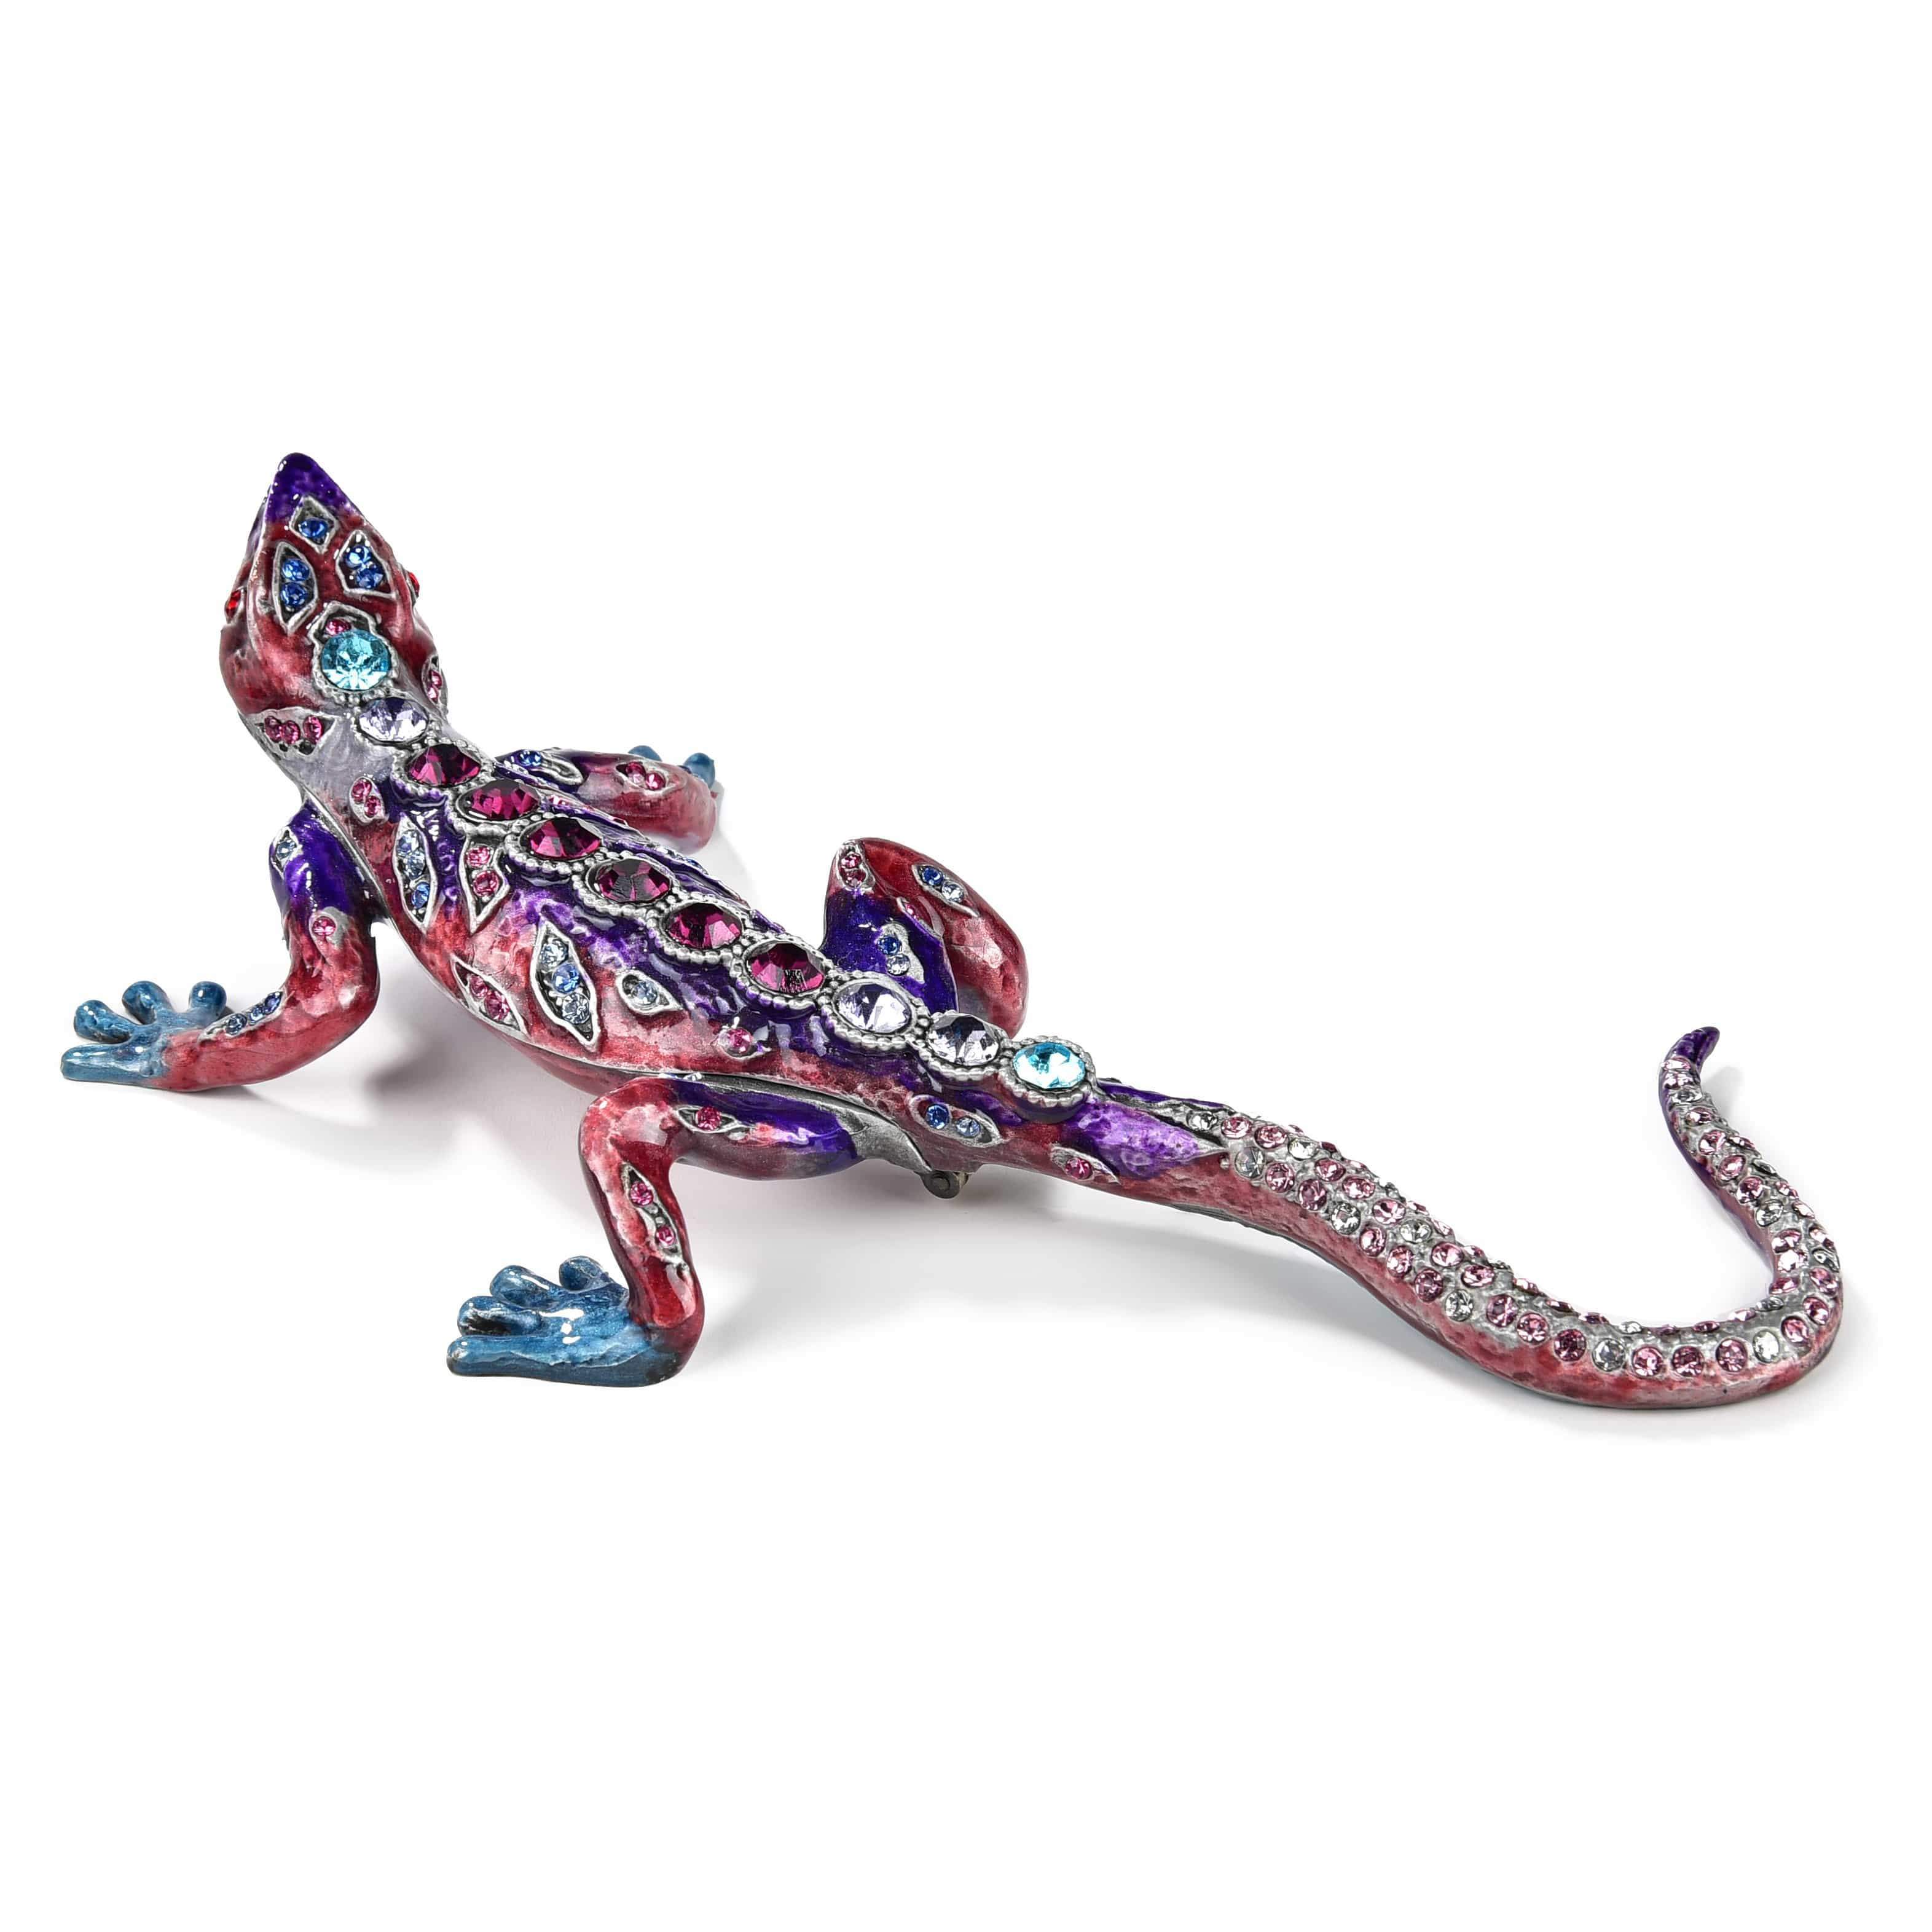 Kalifano Vanity Figurine Amethyst Crystal Lizard Figurine Keepsake Box SVA-028